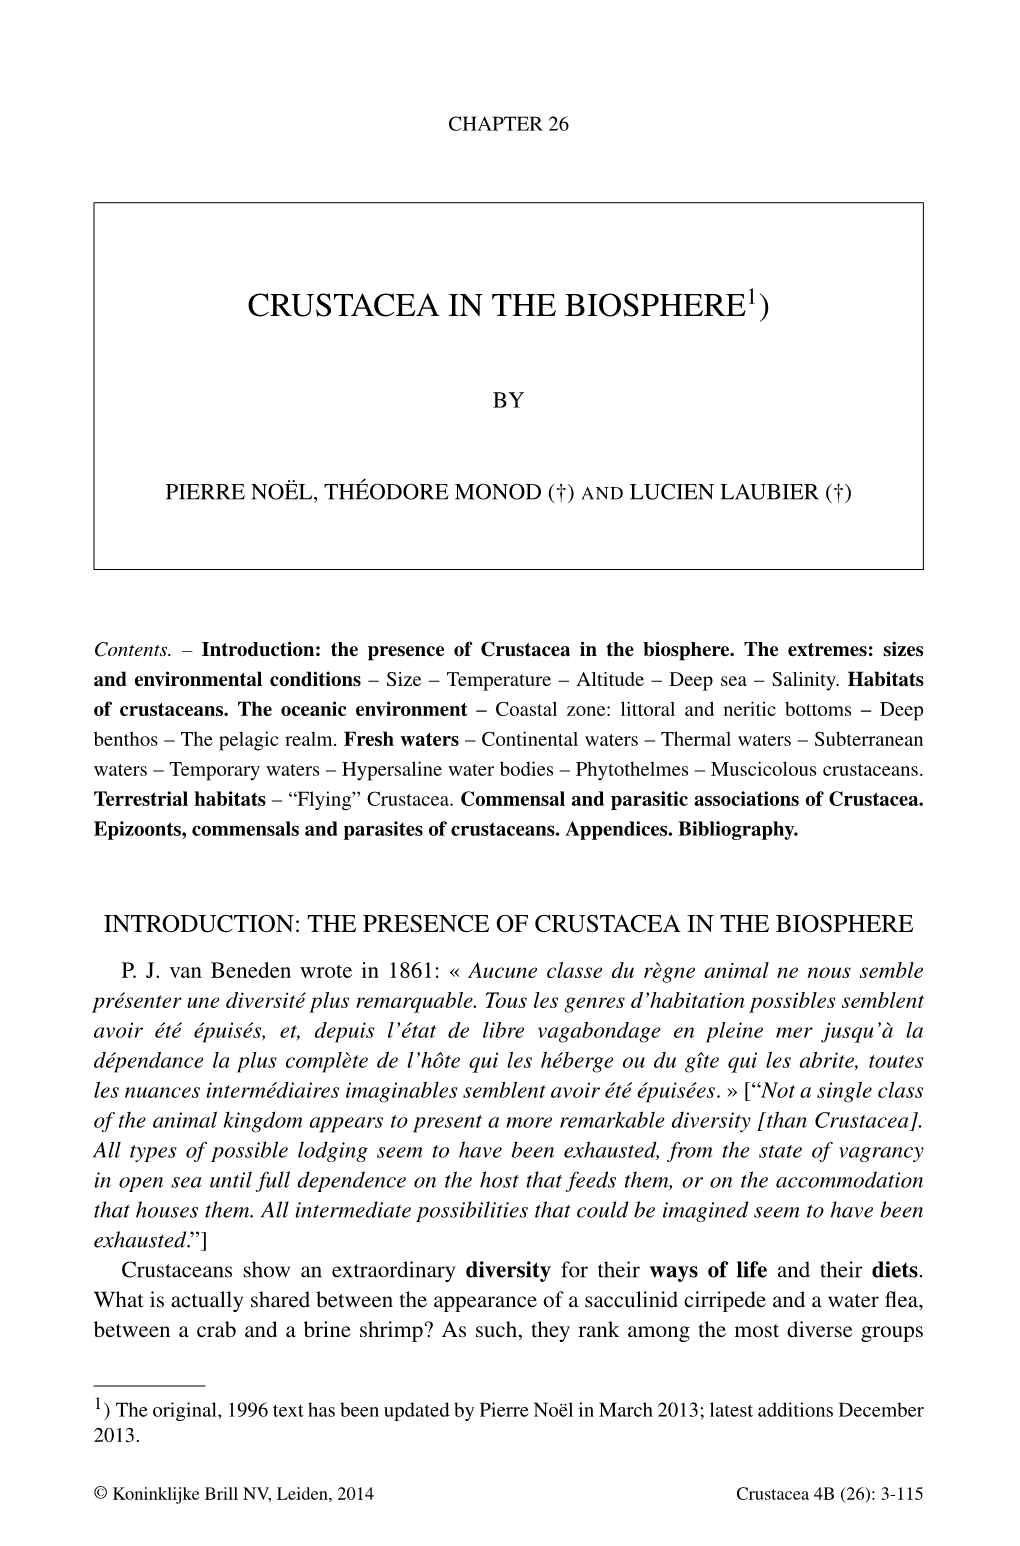 Crustacea in the Biosphere1)